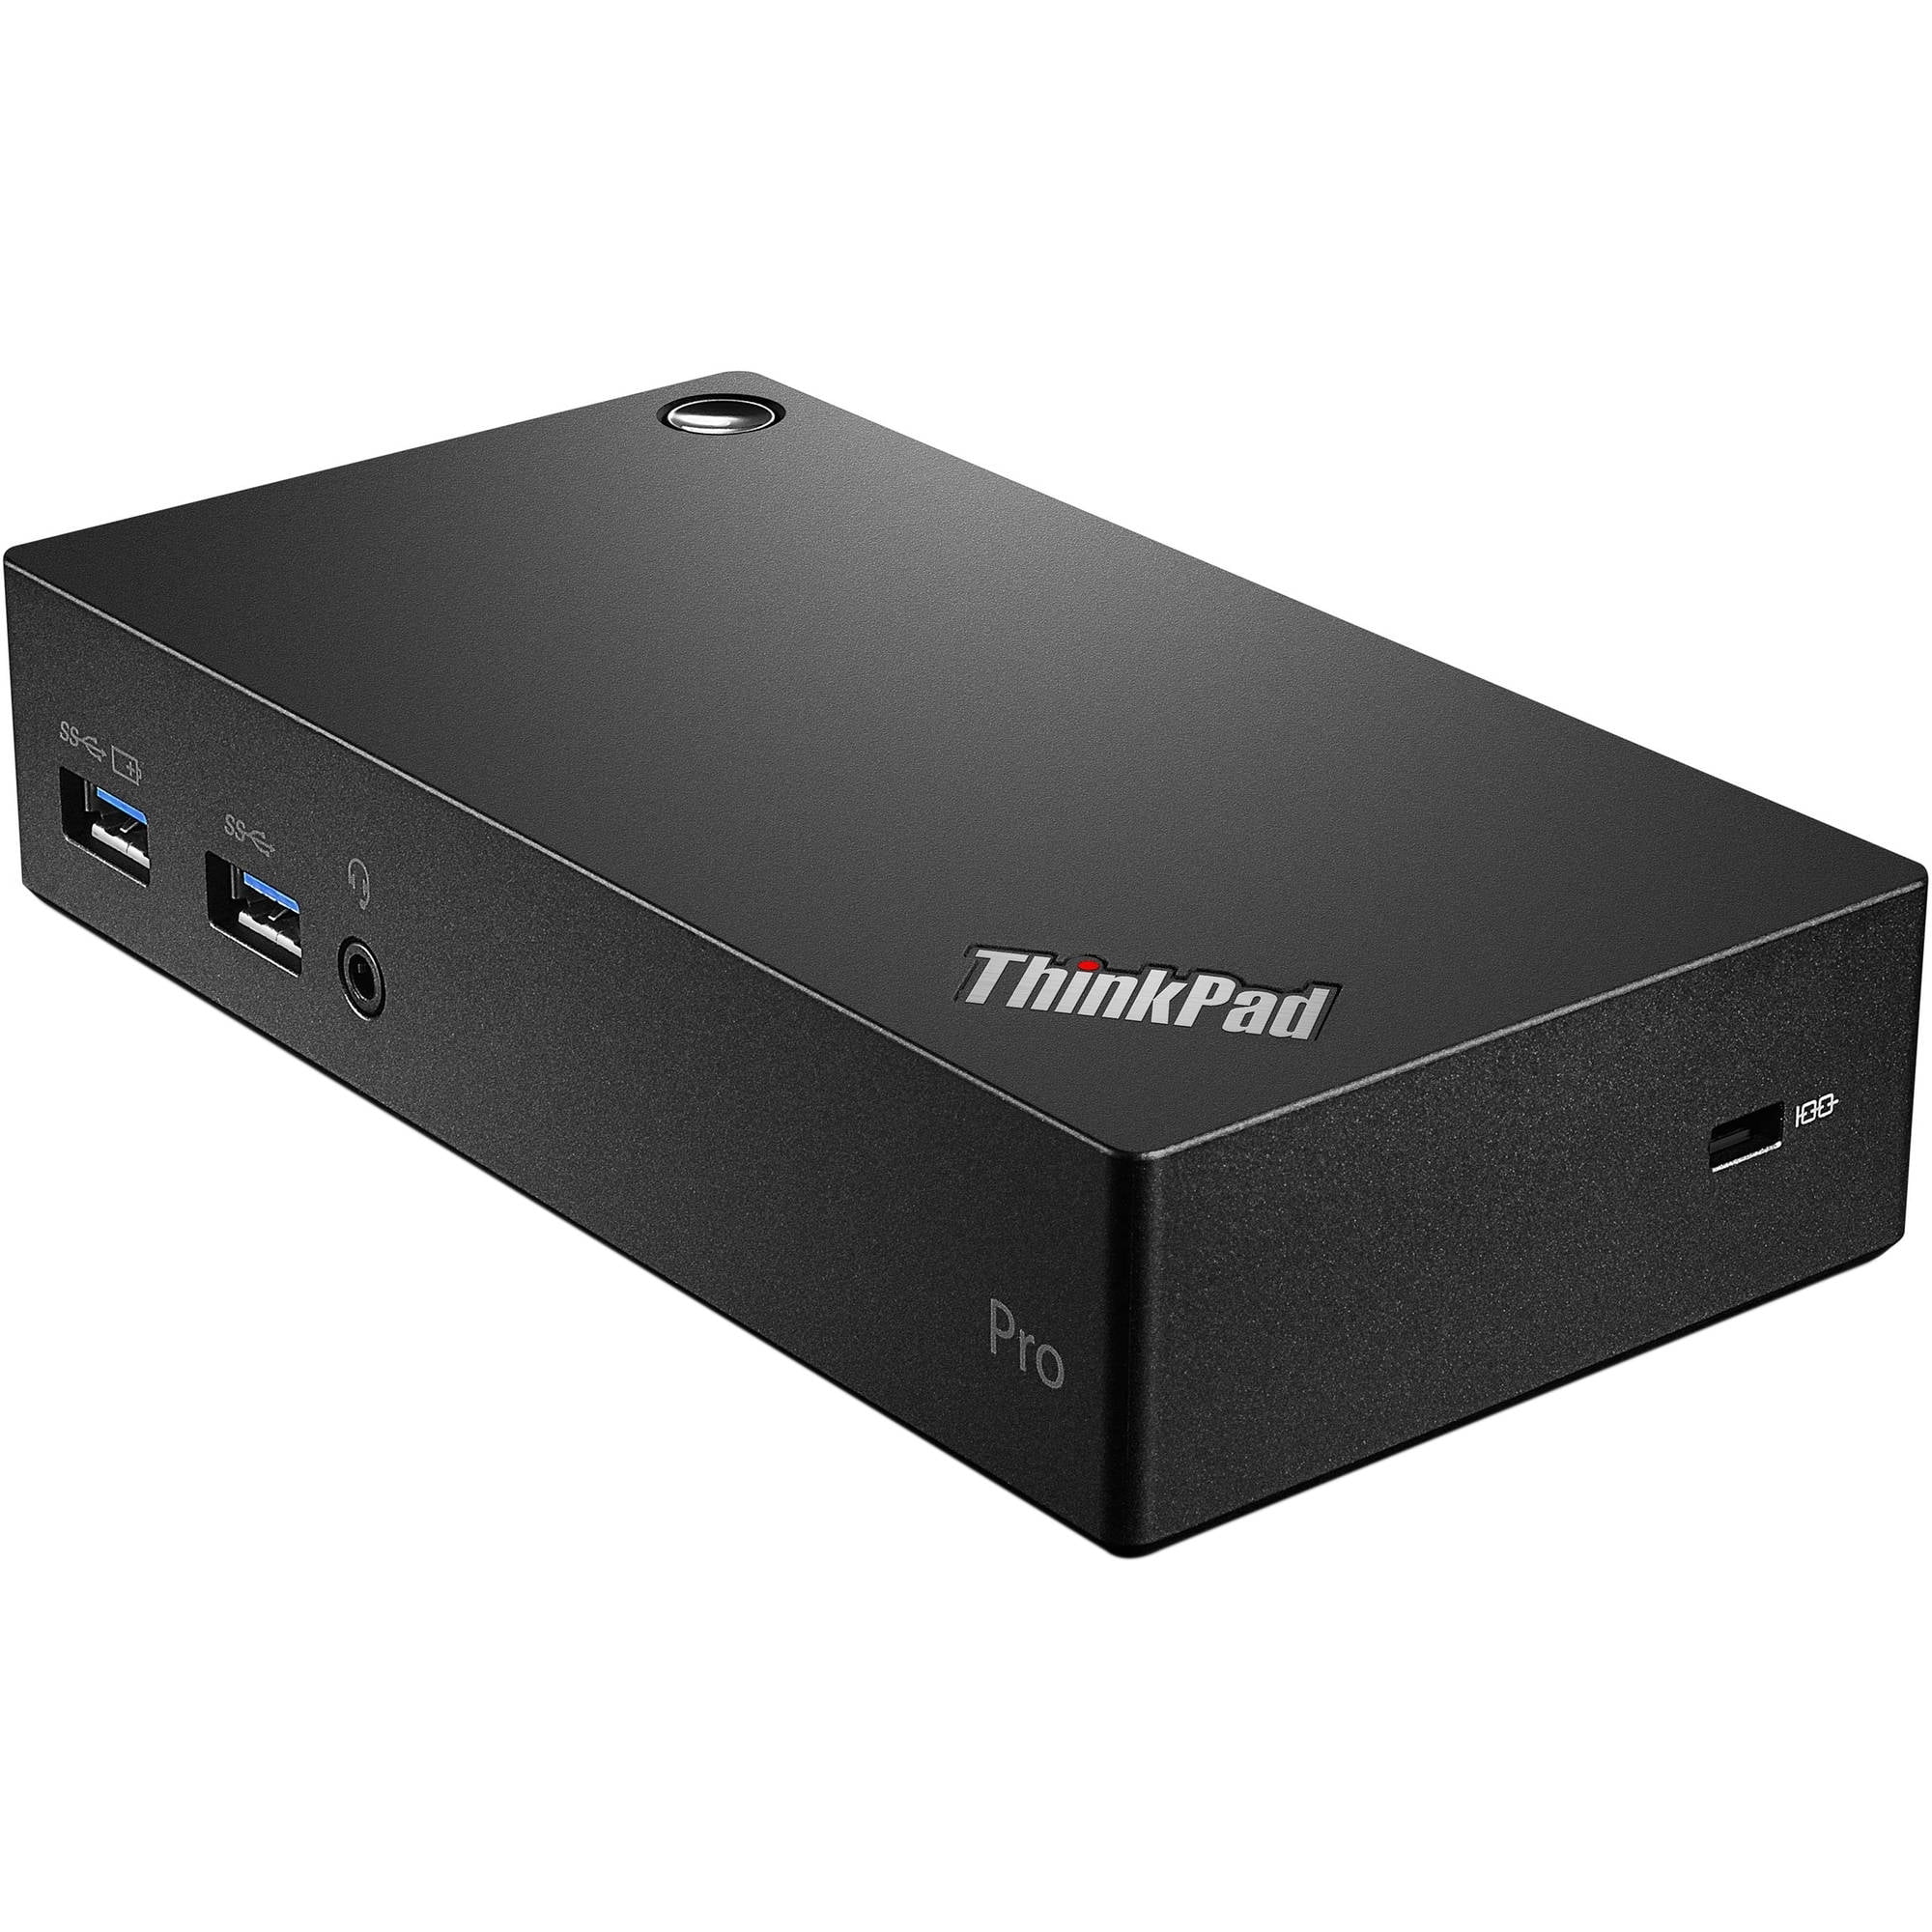 Lenovo Thinkpad Usb 3 0 Pro Dock0